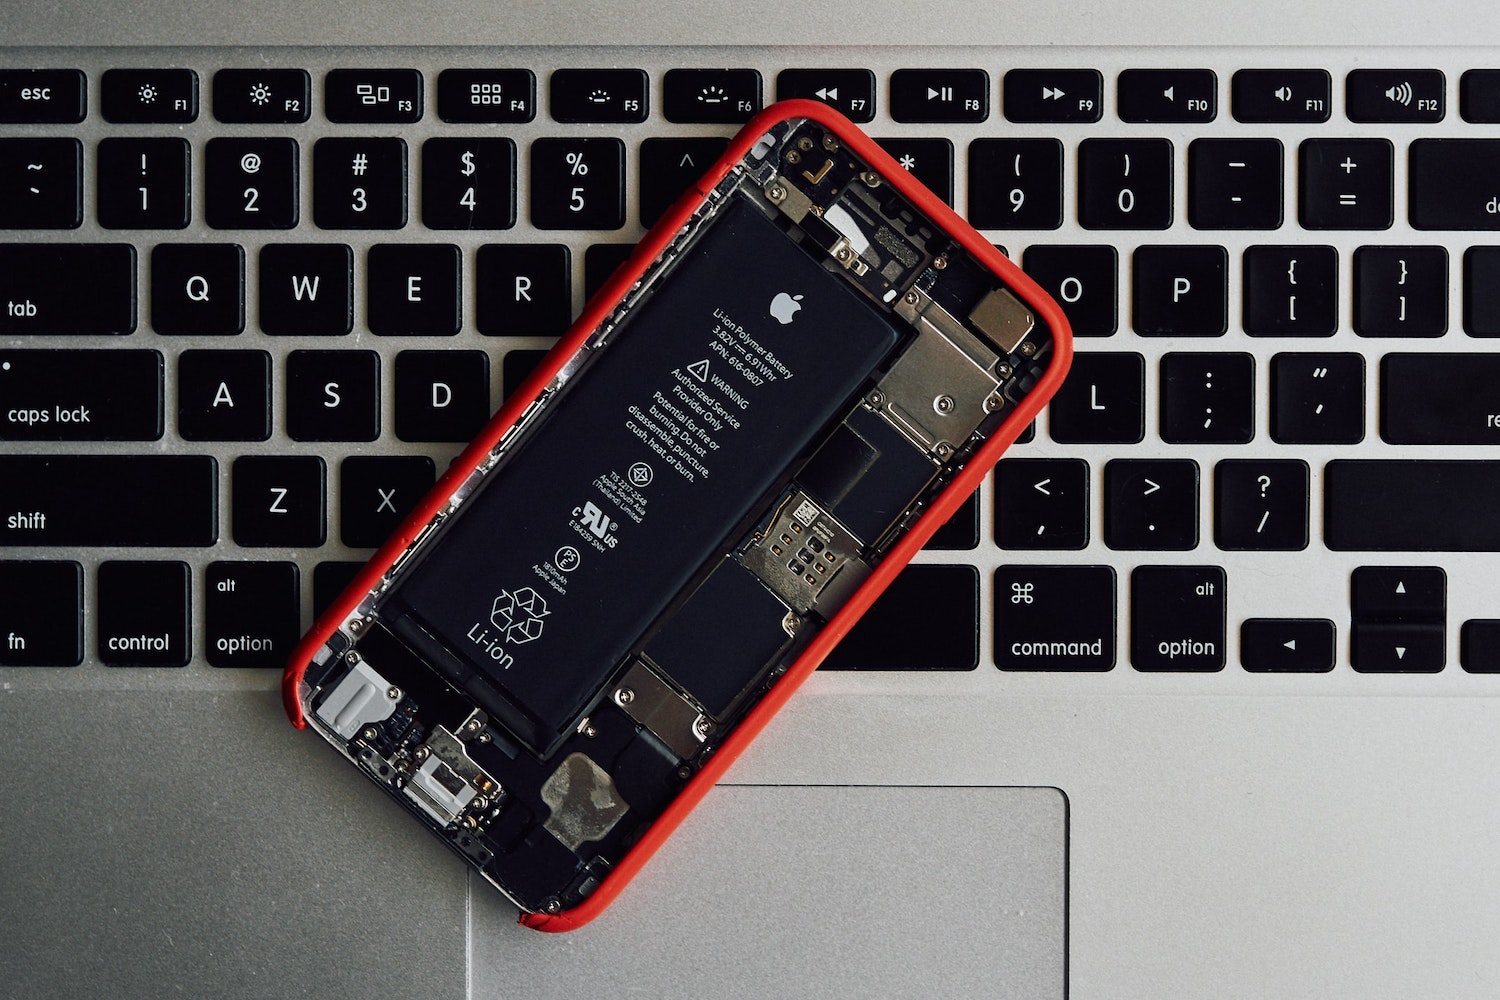 Comprar batería de iPhone 6S a precio original para cambiar